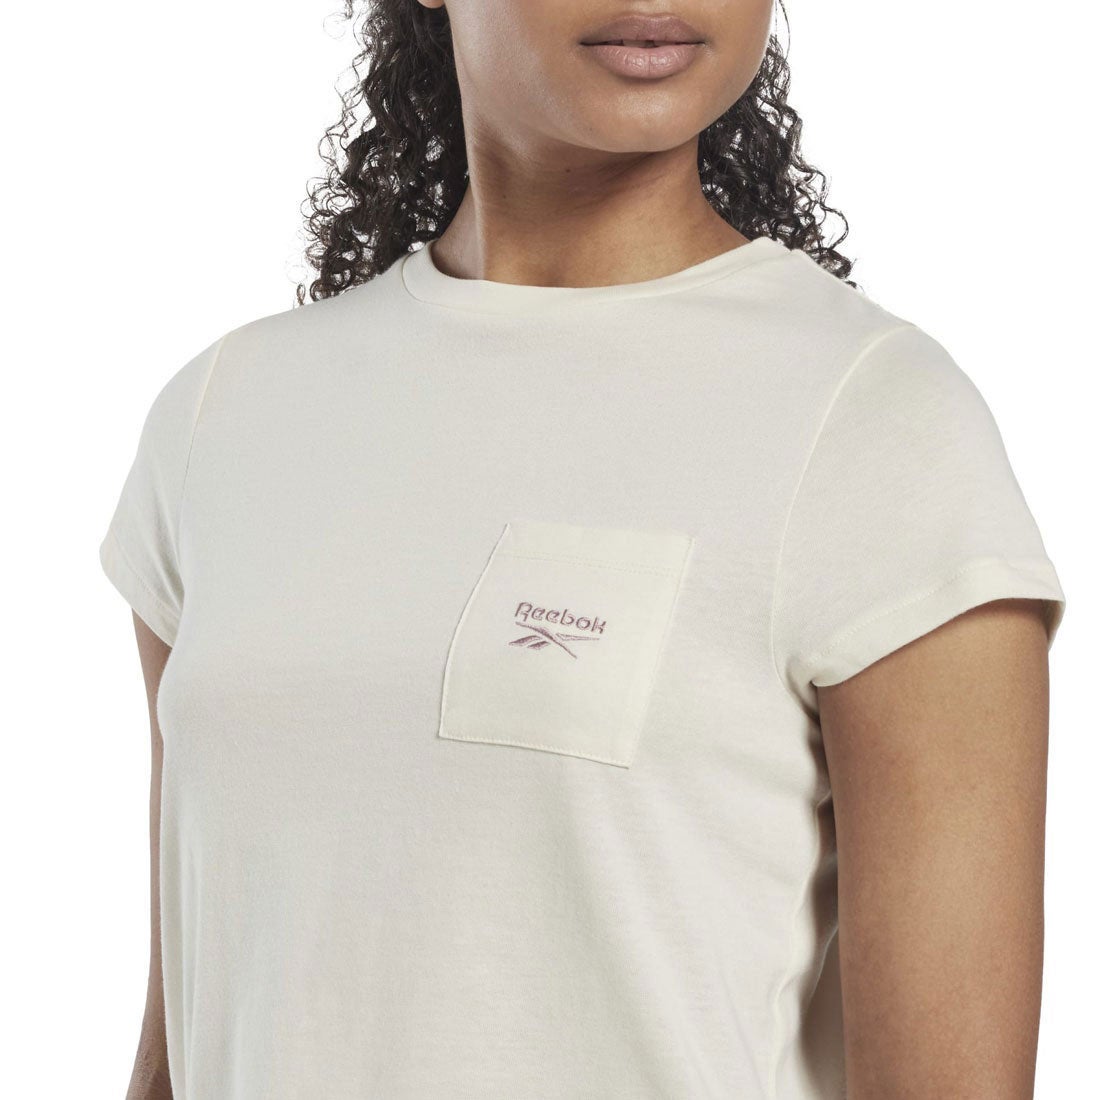 アイデンティティ ポケット Tシャツ / Identity Pocket T-Shirt （クラシックホワイト）